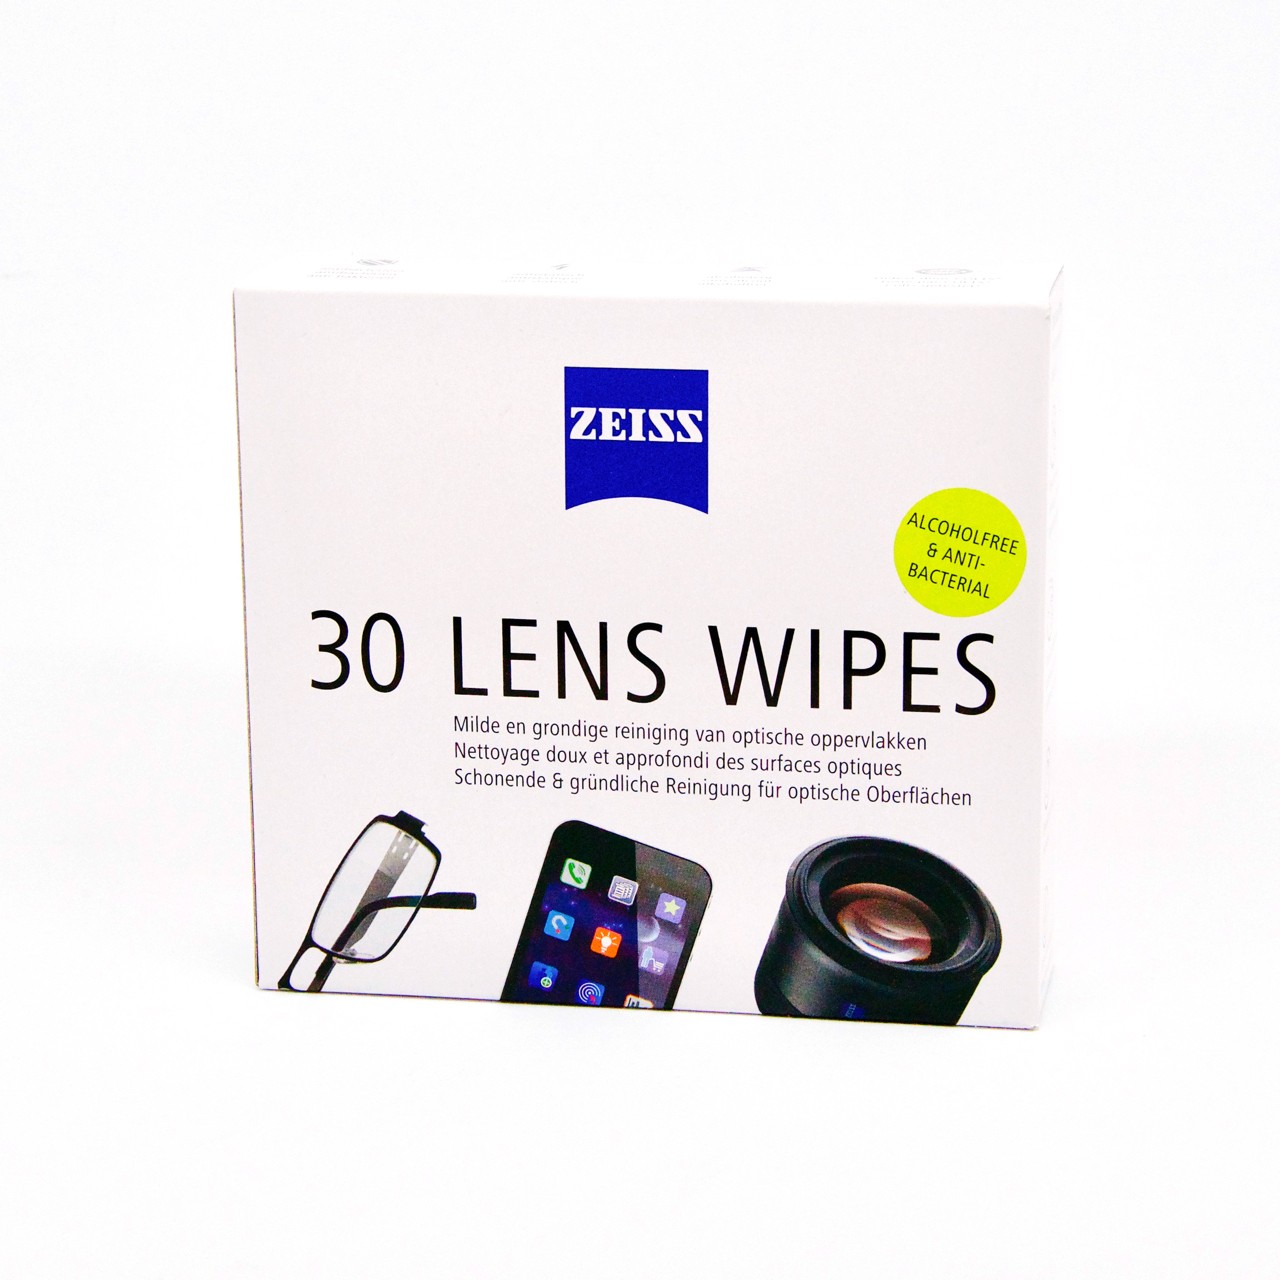 Lingettes nettoyantes pour lunettes Zeiss - lingettes microfibres